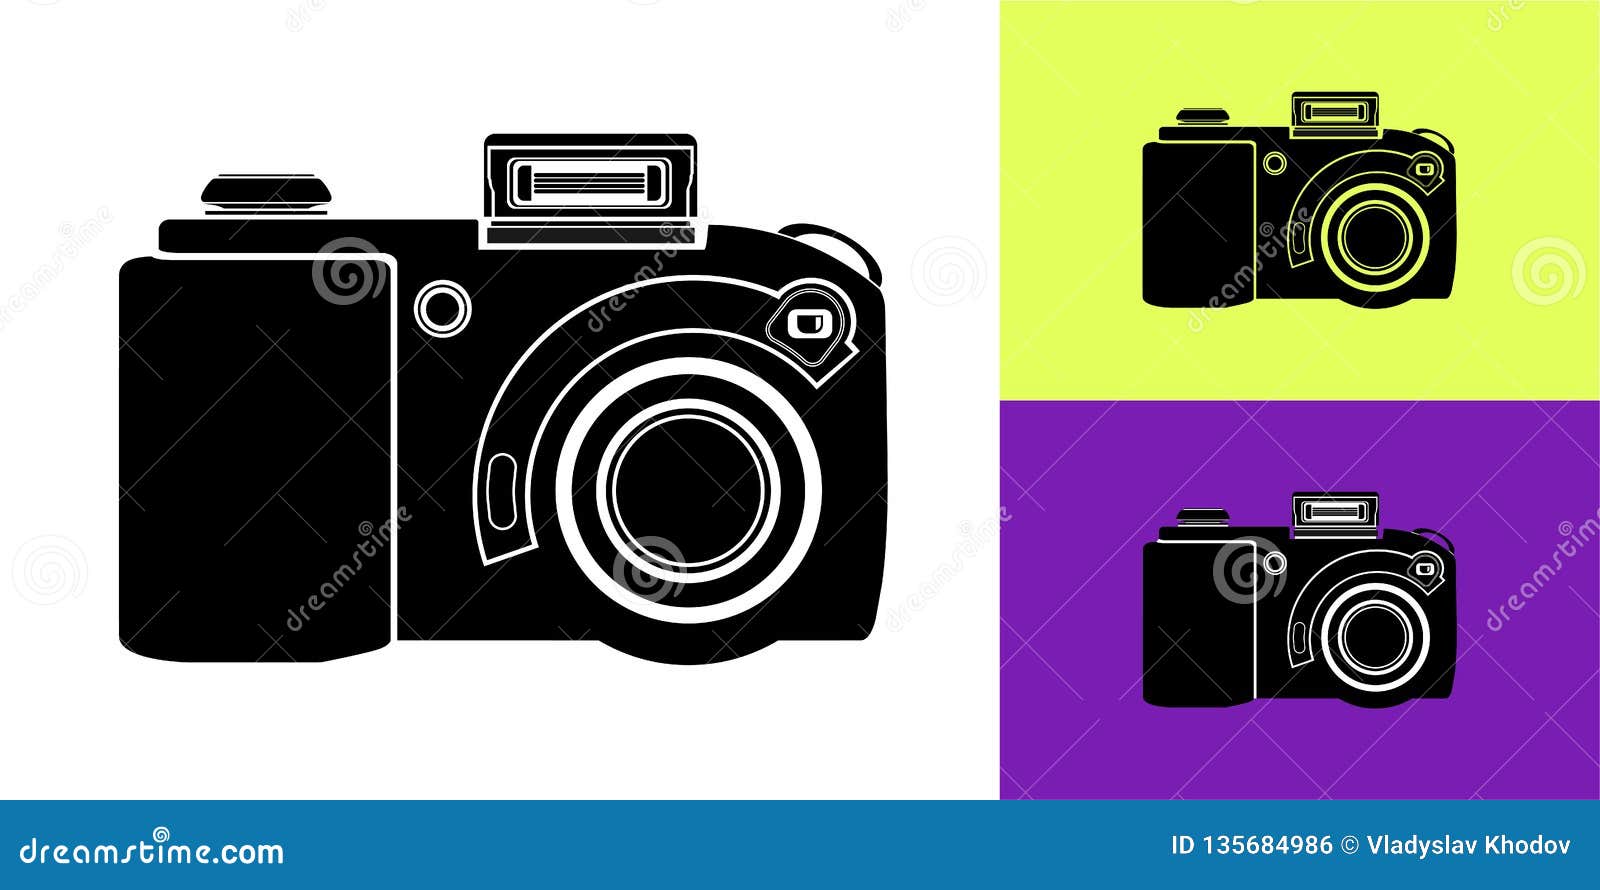 Biểu tượng máy ảnh đen trên nền trắng là một đặc điểm nổi bật của nhiều dòng máy ảnh hiện đại. Hãy xem bức ảnh này để cảm nhận vẻ đẹp của biểu tượng này trên nền trắng đơn giản nhưng tinh tế.